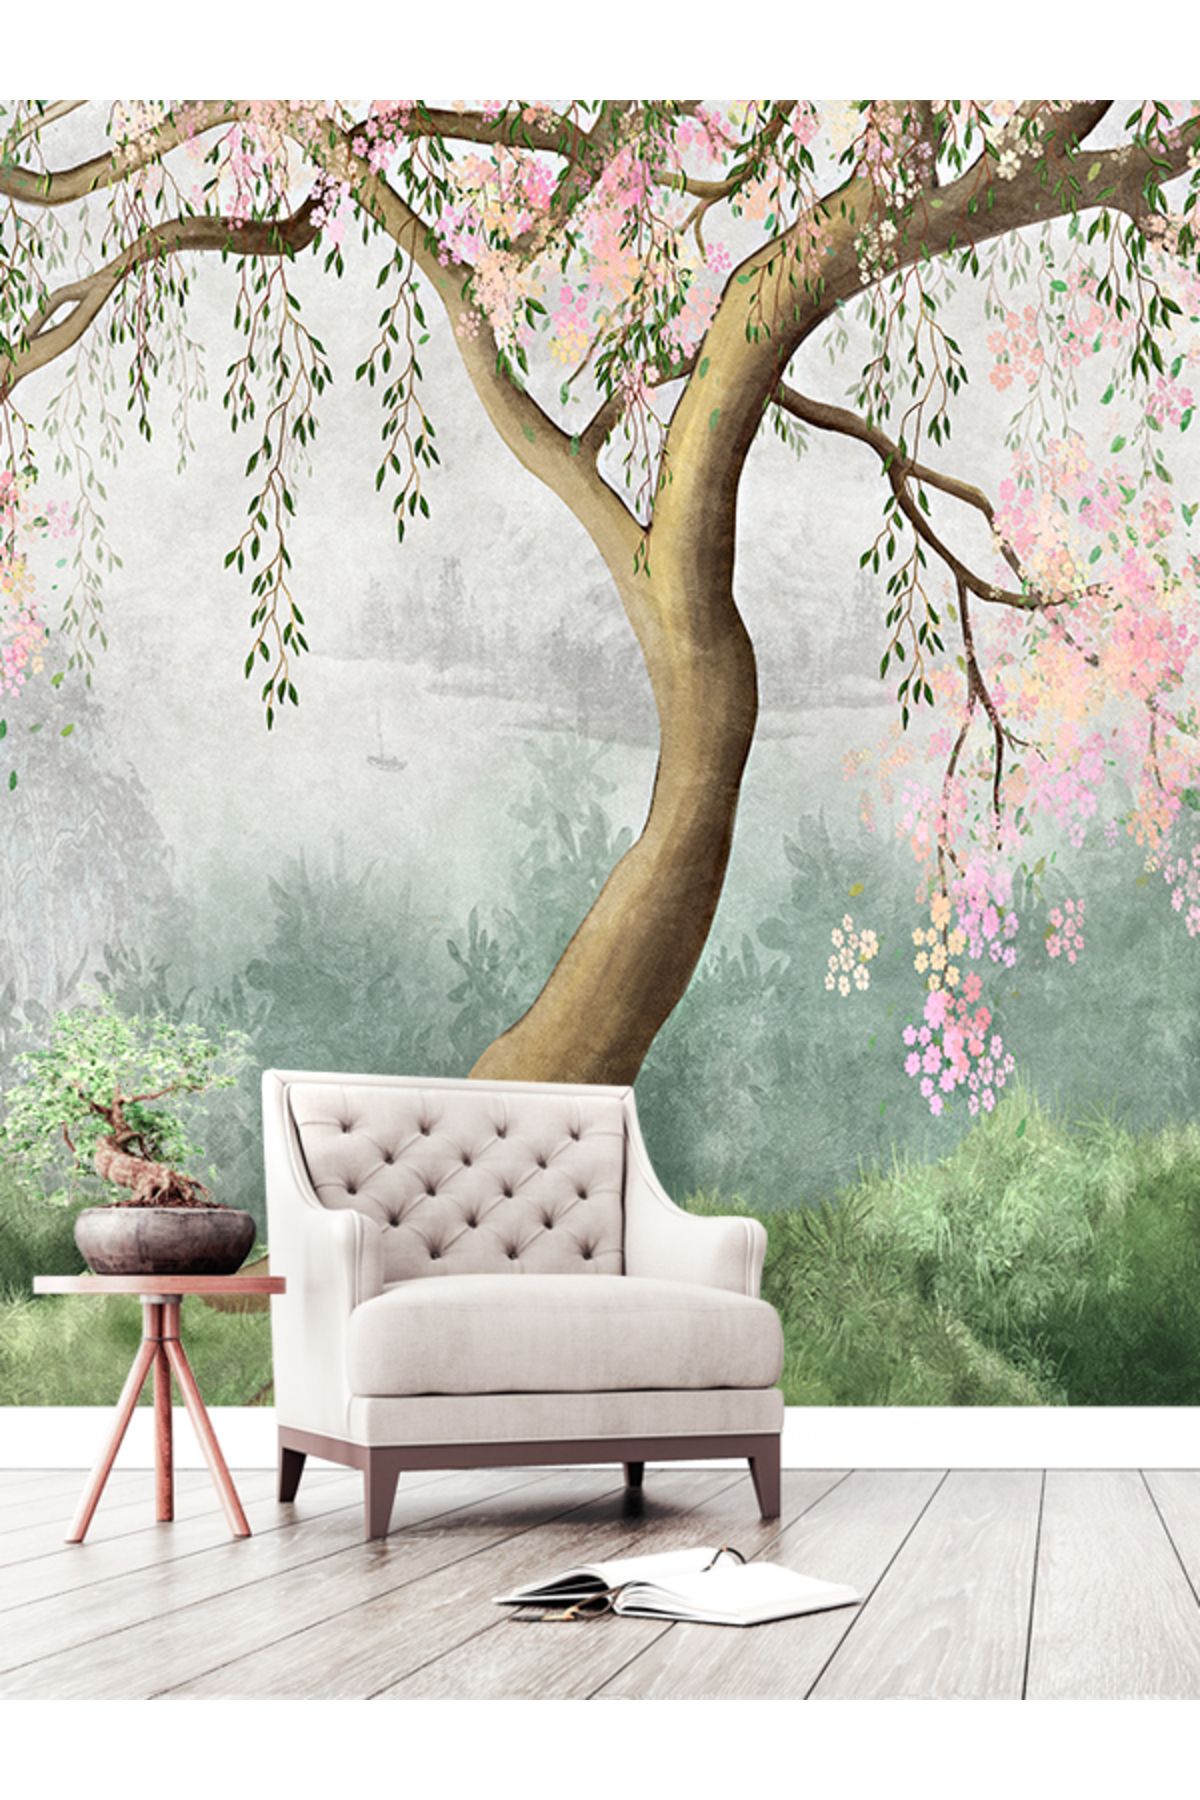 dreamwall Sulu Boya Çalışması Pembe Çiçekli Ağaç Desenli Tekstil Duvar Kağıdı